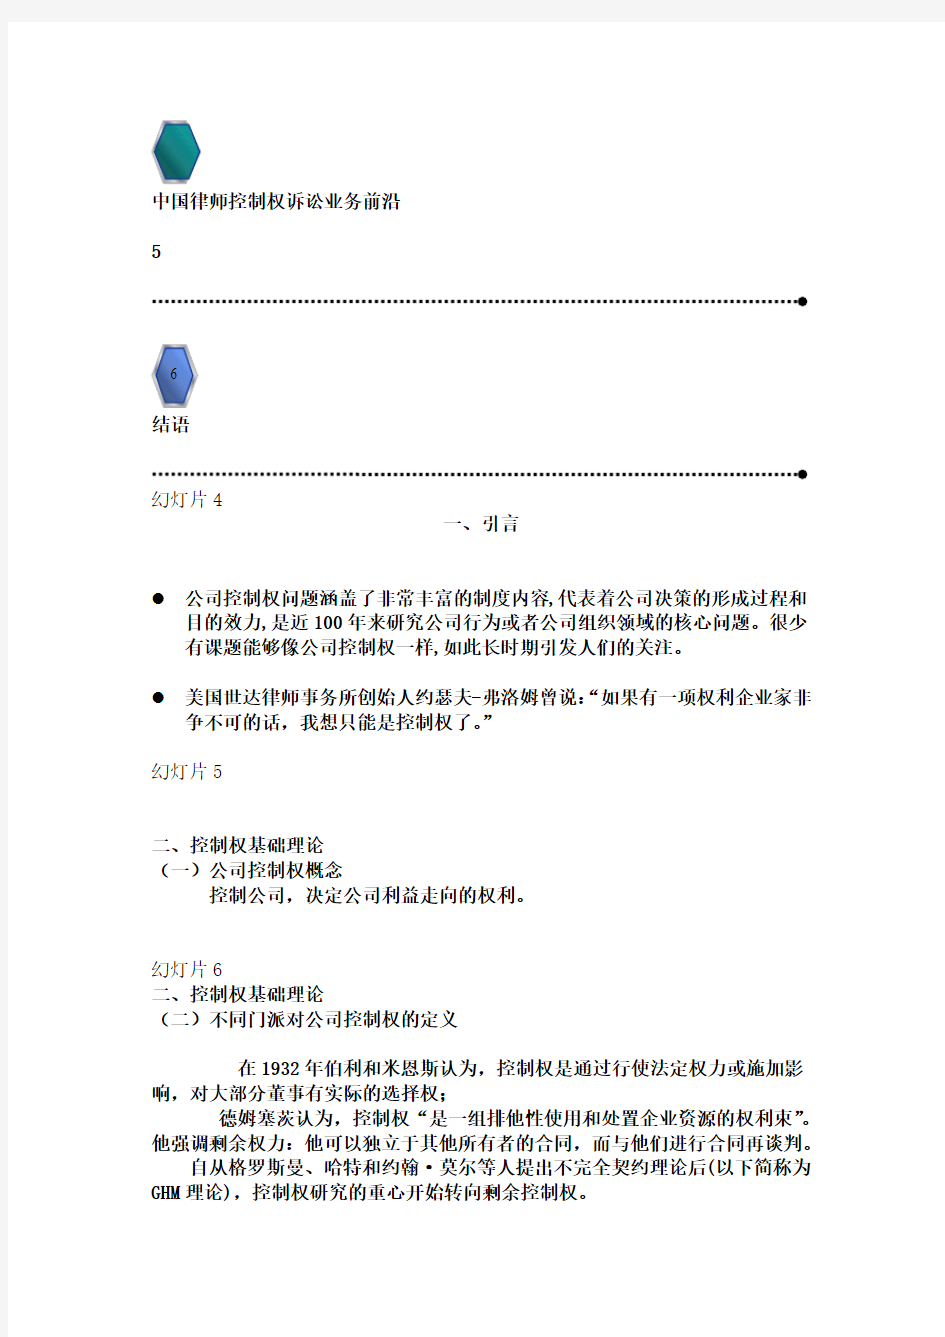 盈科律师事务所 清华大学 王光英律师：公司控制权纠纷